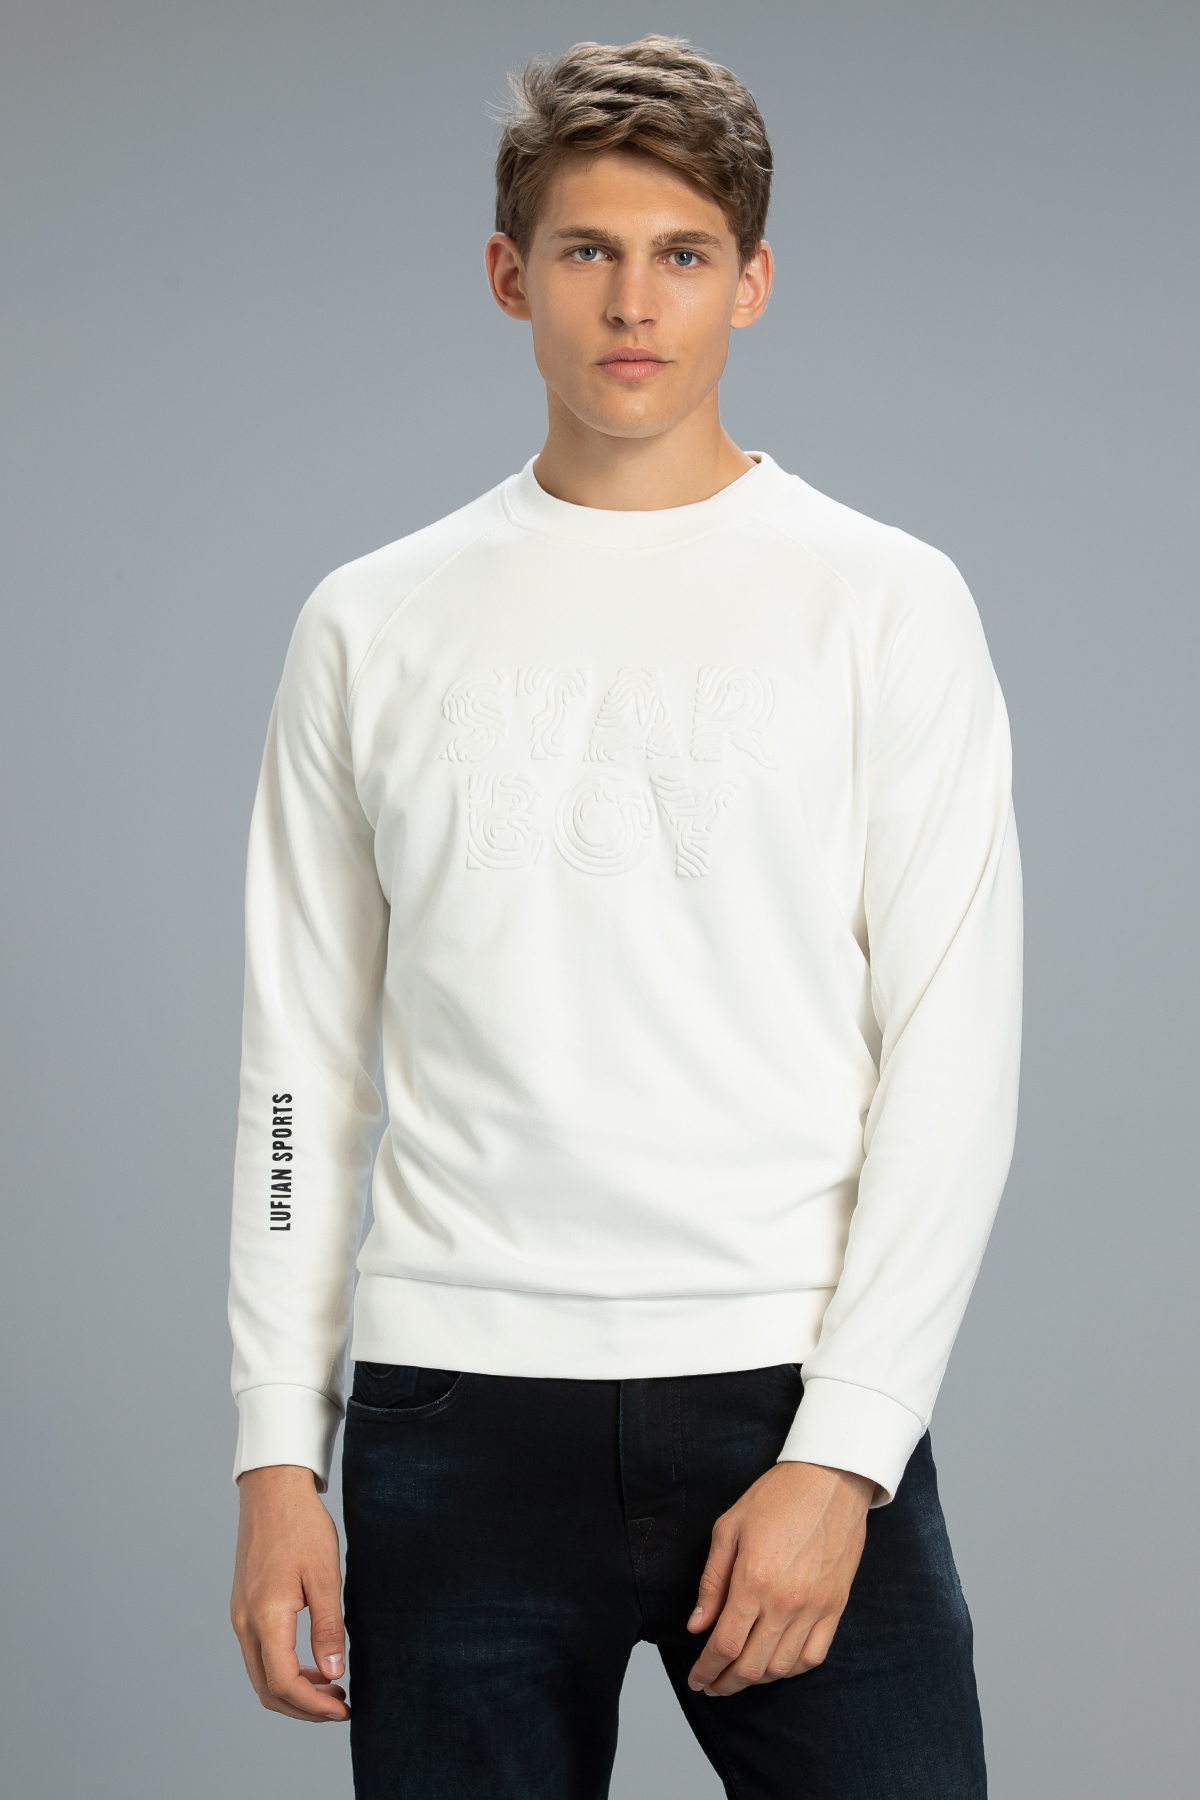 Uno Erkek Sweatshirt Kırık Beyaz